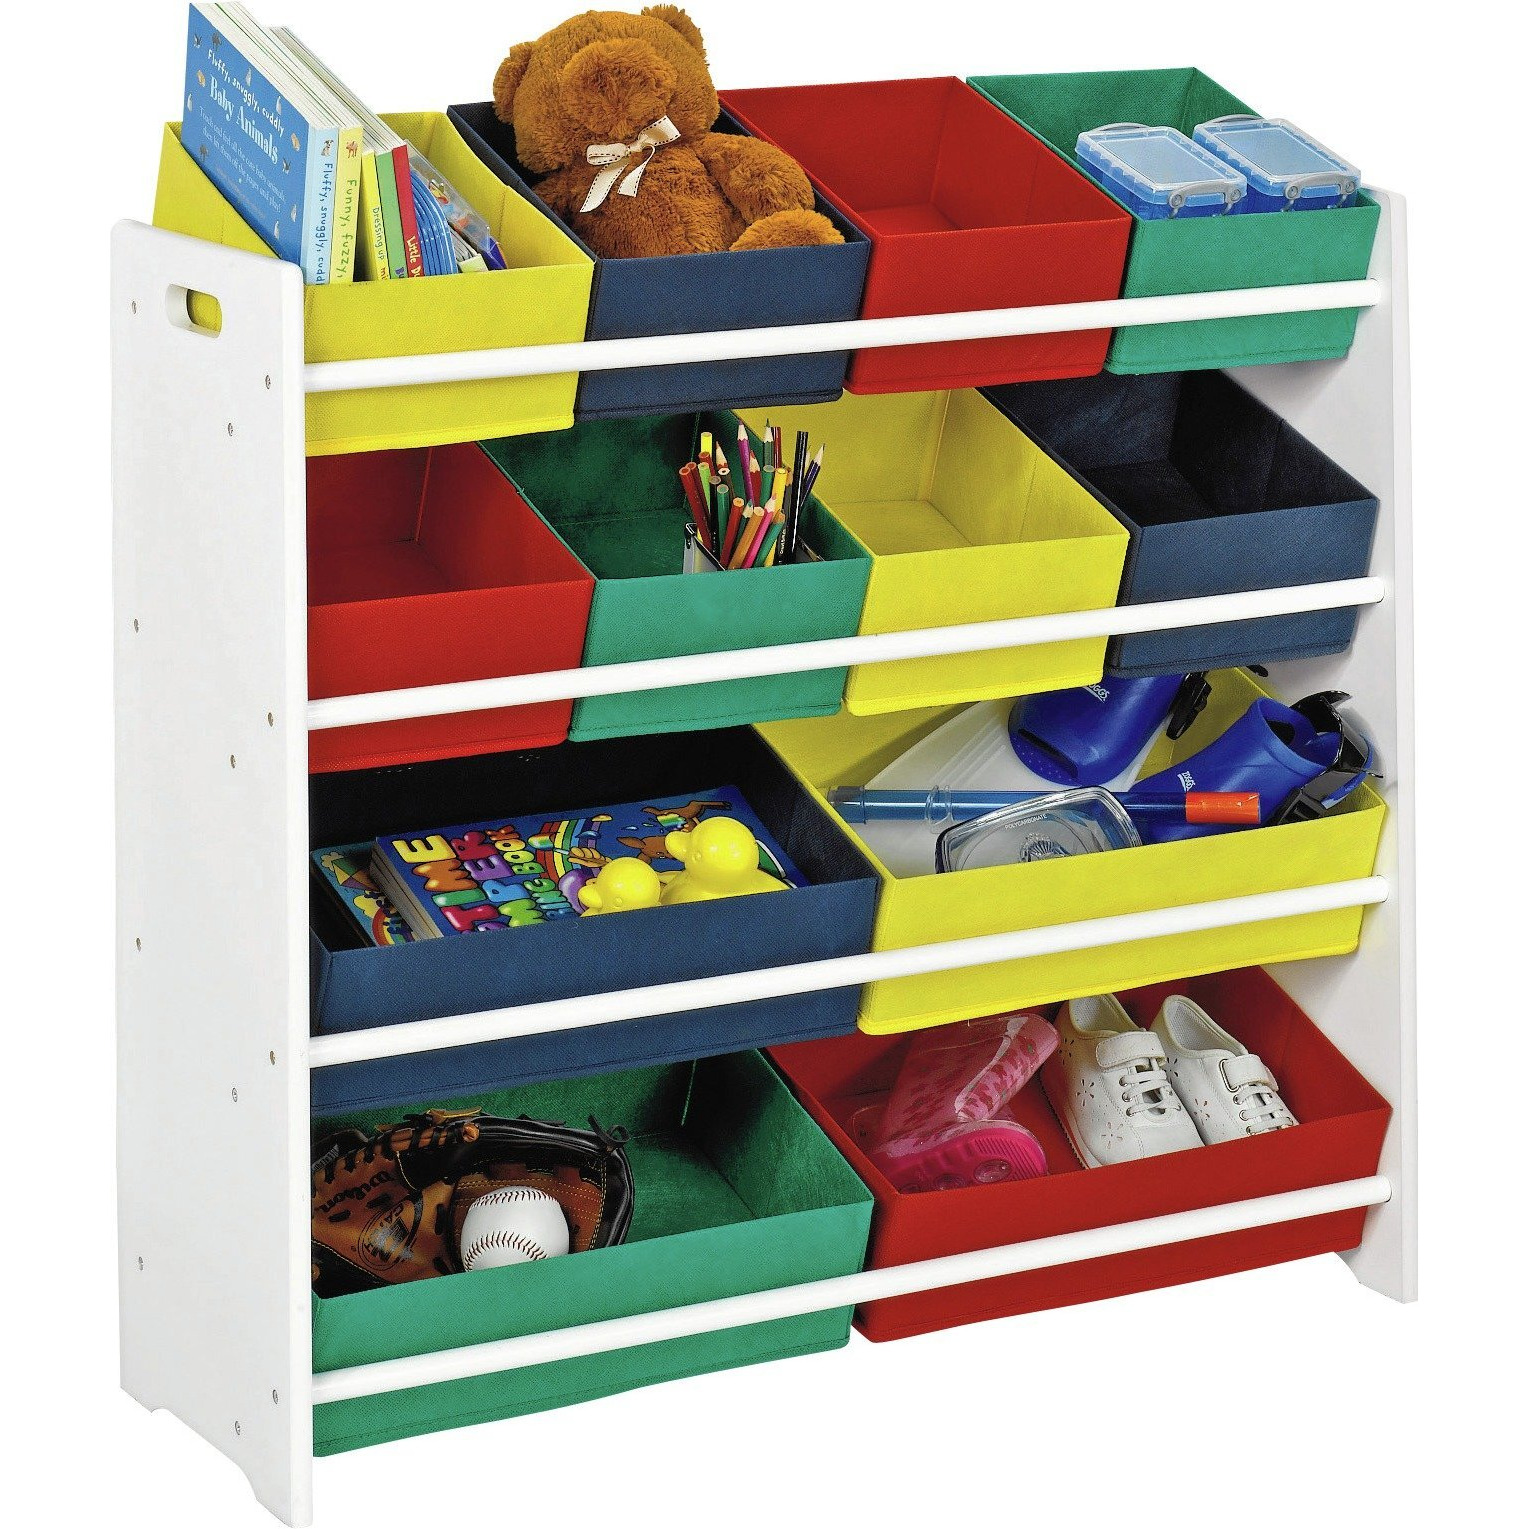 Argos Home 4 Tier Kids Basket Storage Unit with Bins - White - image 1